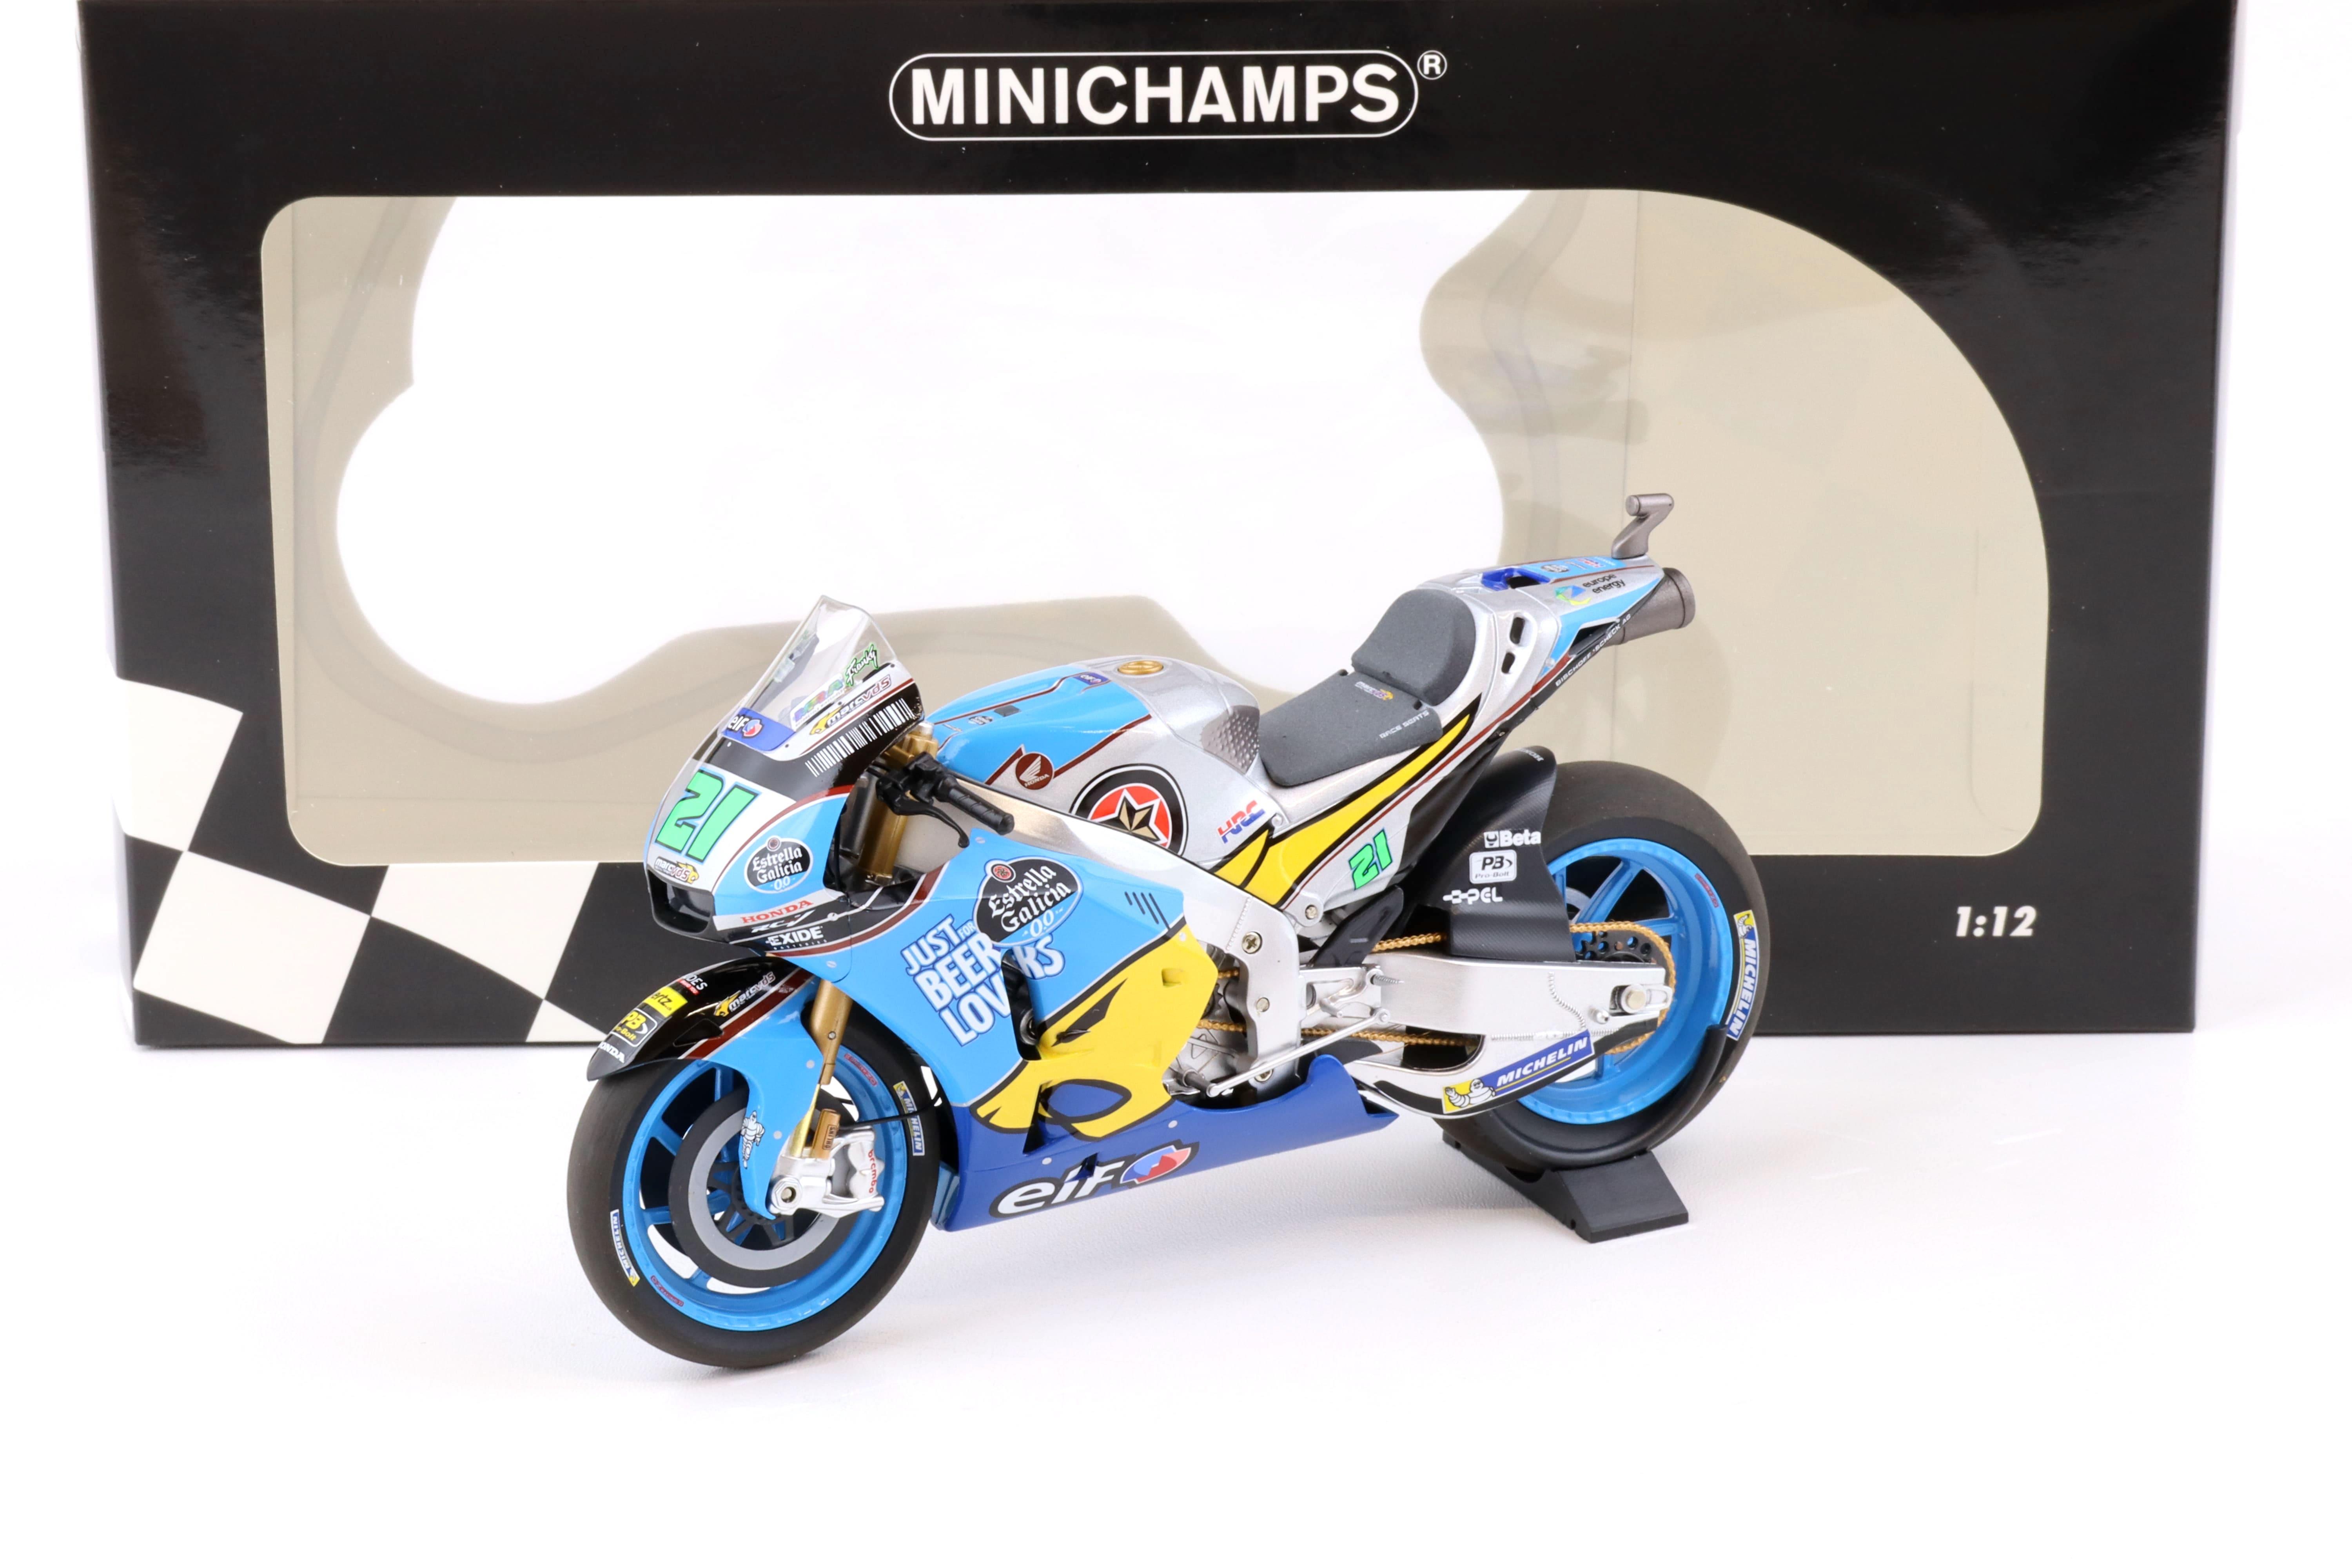 1:12 Minichamps Honda RC213V Morbidelli Team EG 0,0 Marc VDS Moto GP 2018